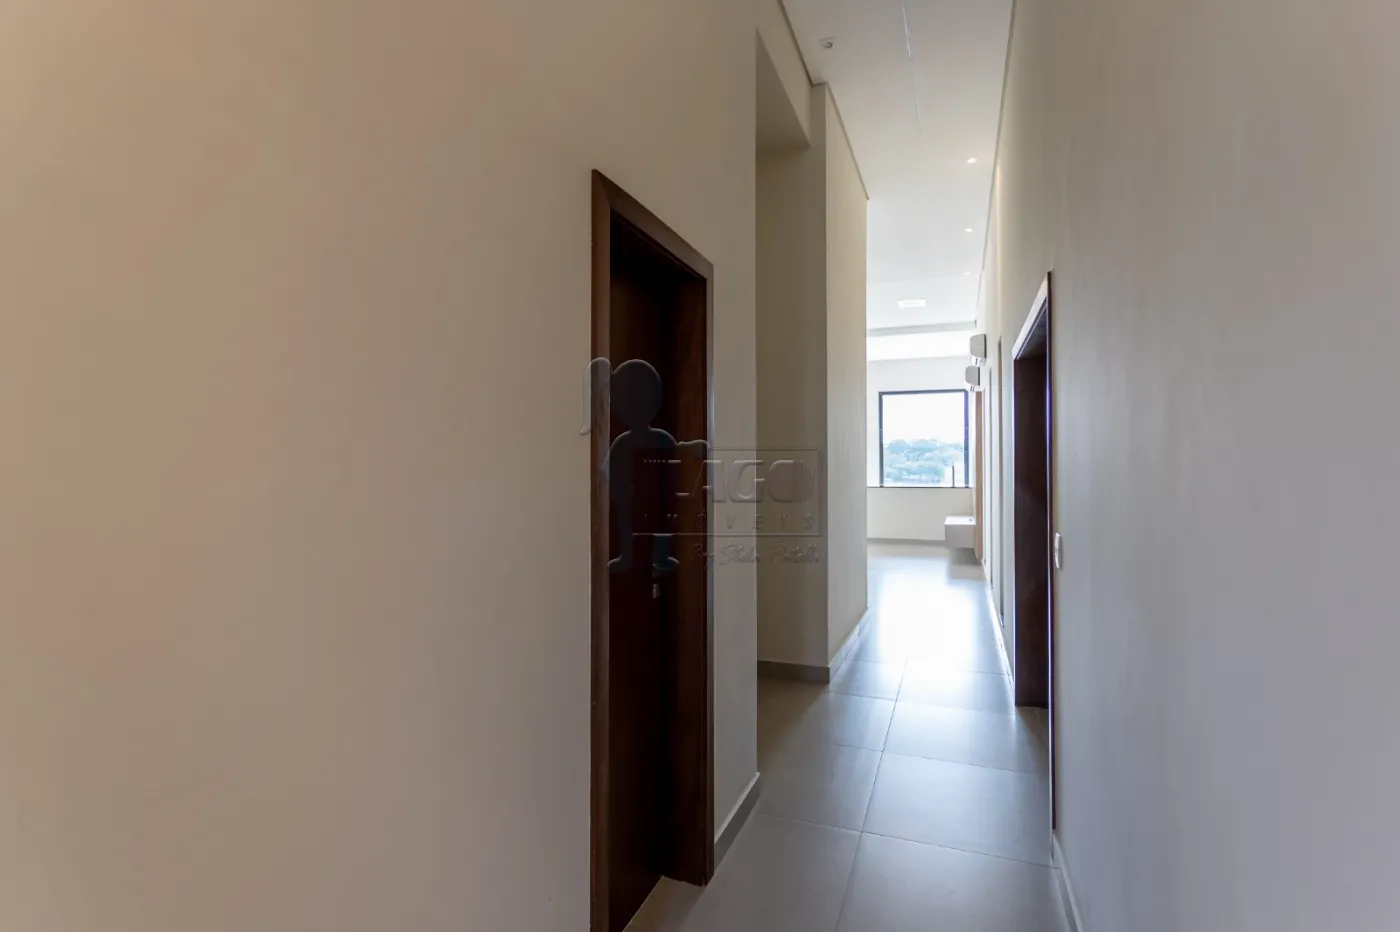 Comprar Casa condomínio / Padrão em Bonfim Paulista R$ 2.300.000,00 - Foto 4